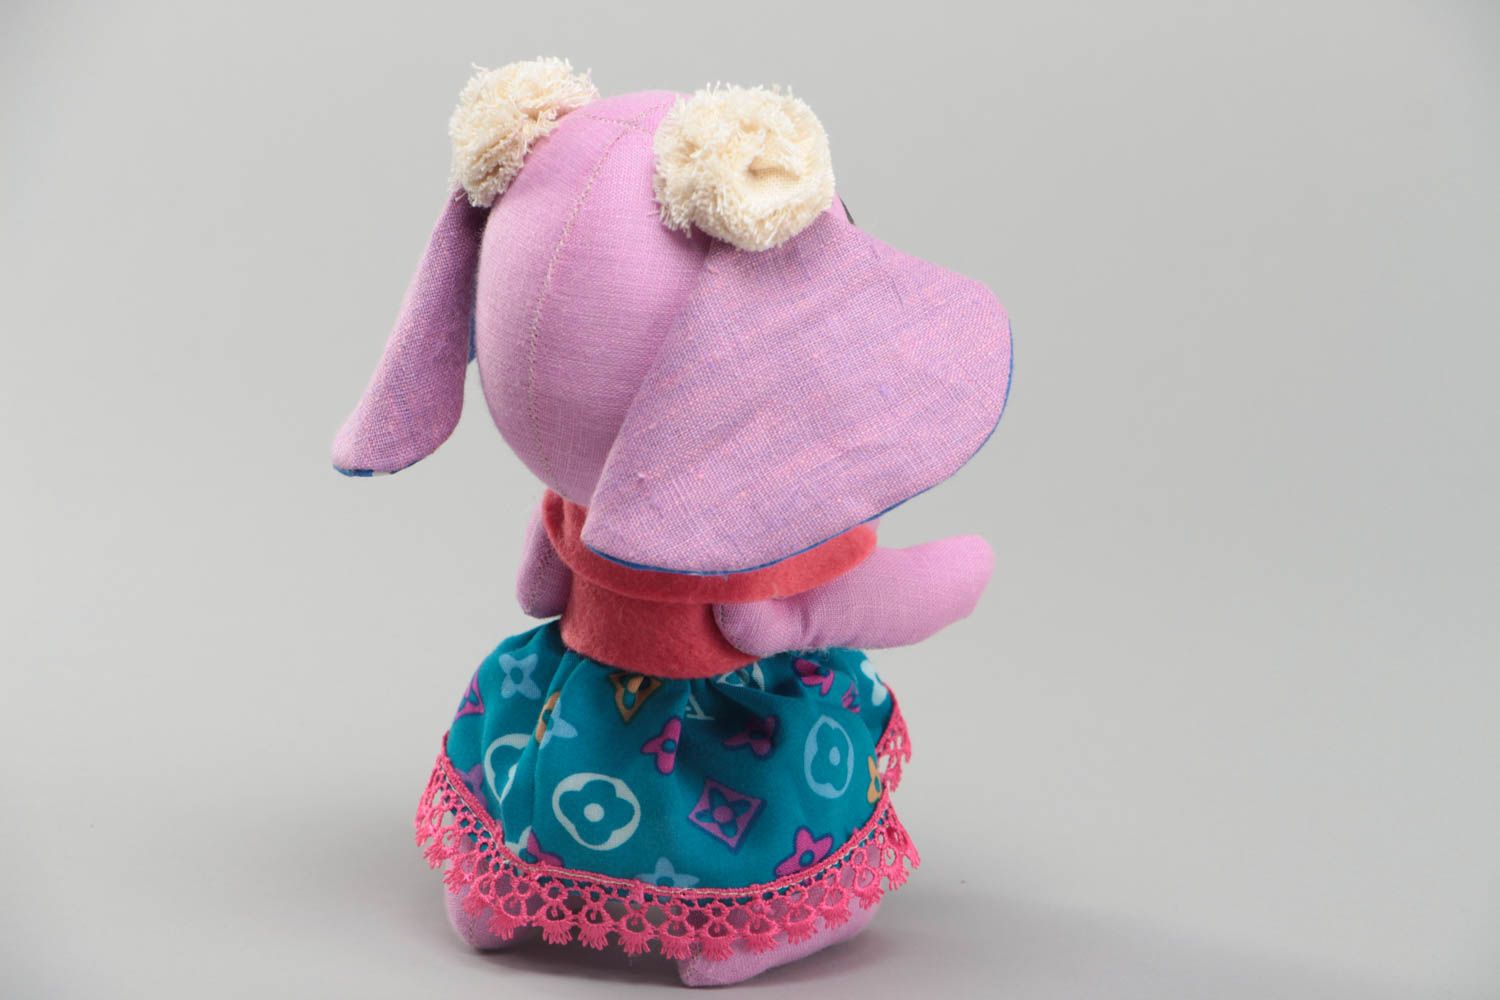 Тканевая игрушка в виде слонихи в платьице розовая красивая смешная хэнд мейд фото 4